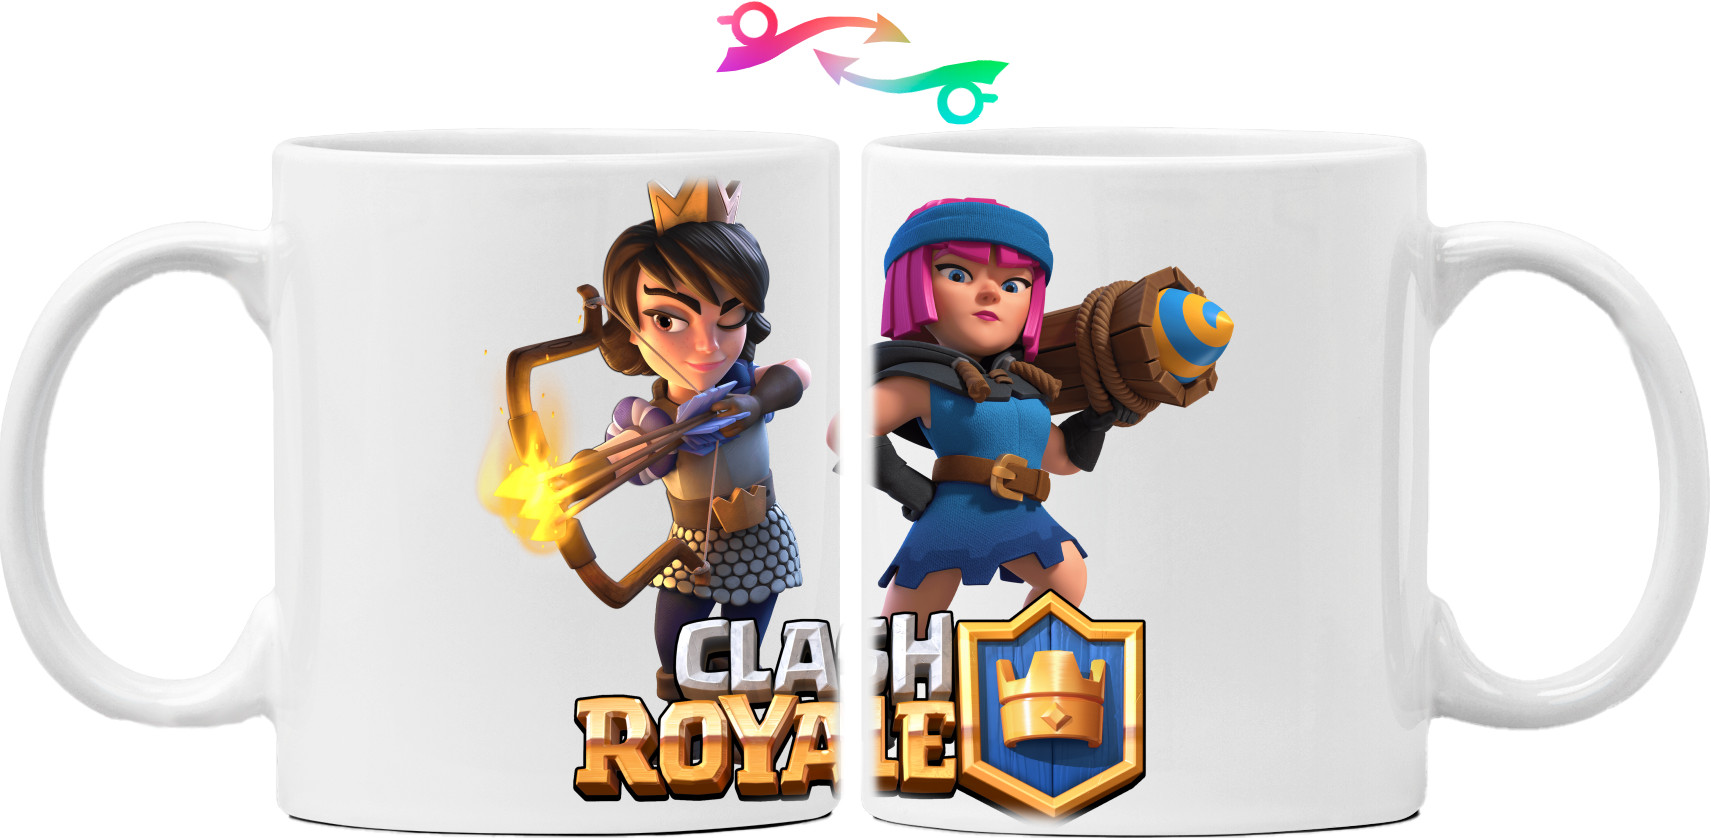 Clash royale 2